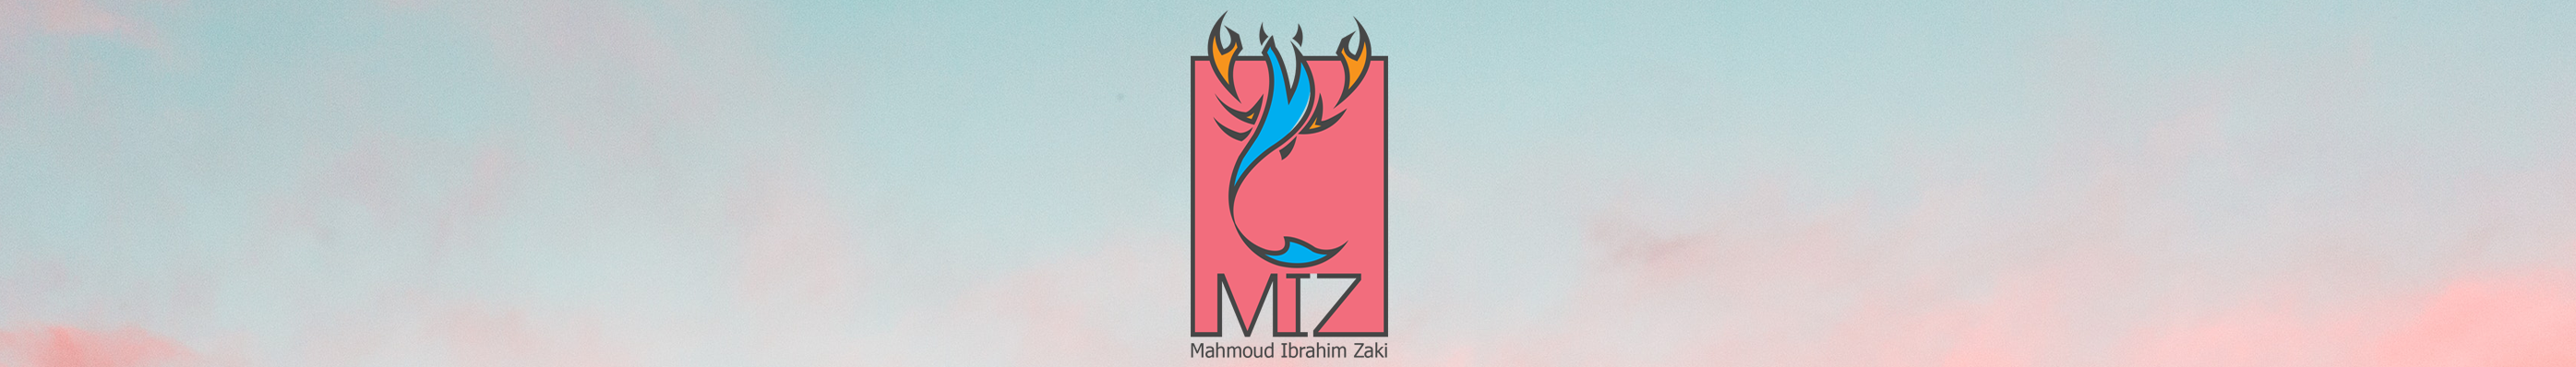 Scorpio MIZ's profile banner